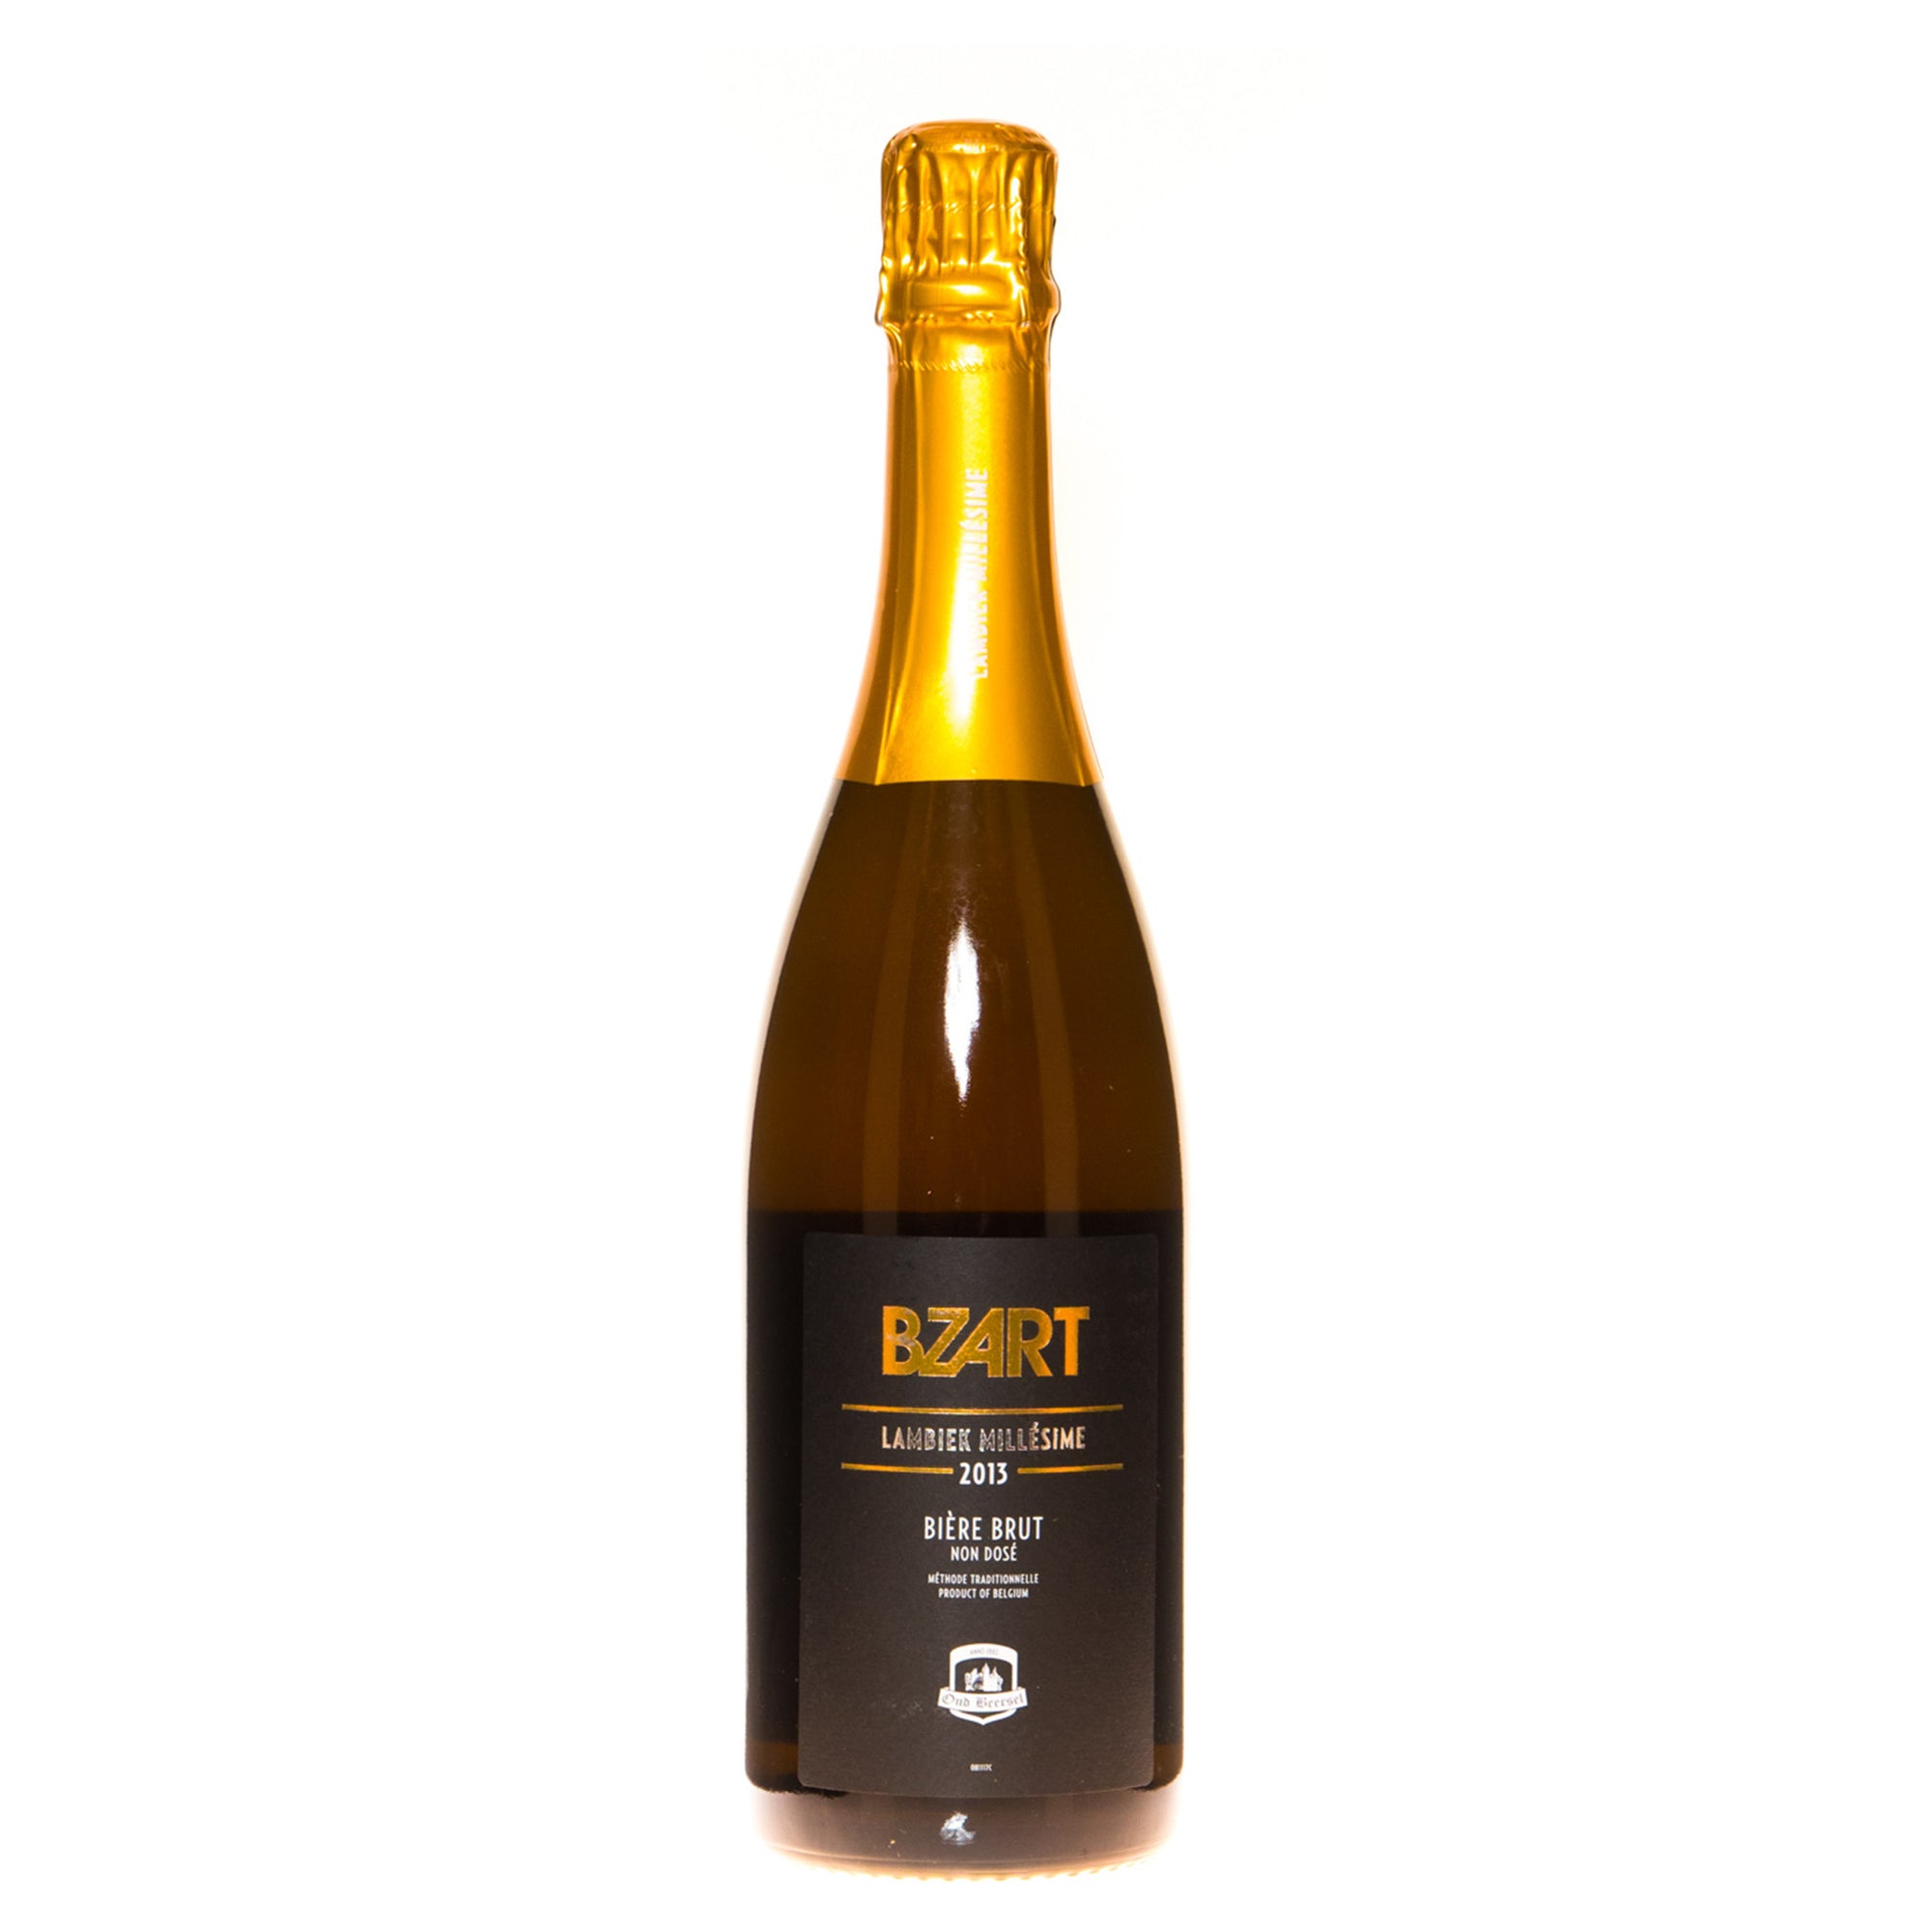 Oud Beersel- Bzart Lambiek Millésime 2013 7% ABV 750ml Bottle